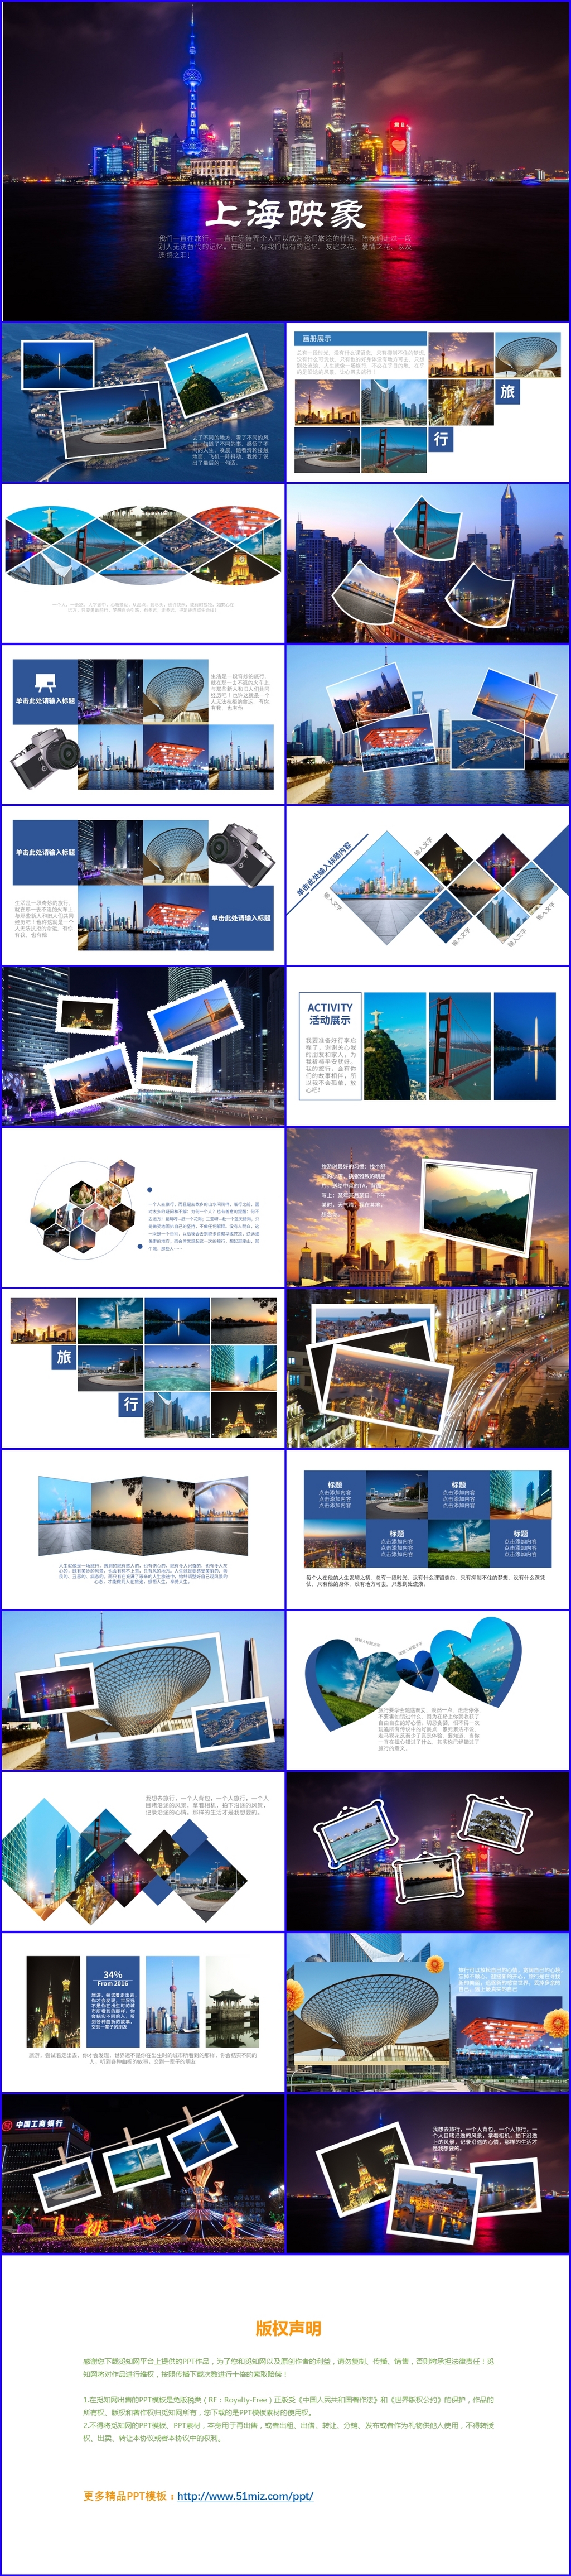 蓝色简约唯美 内含多图 旅游相册  画册  照片墙ppt模版